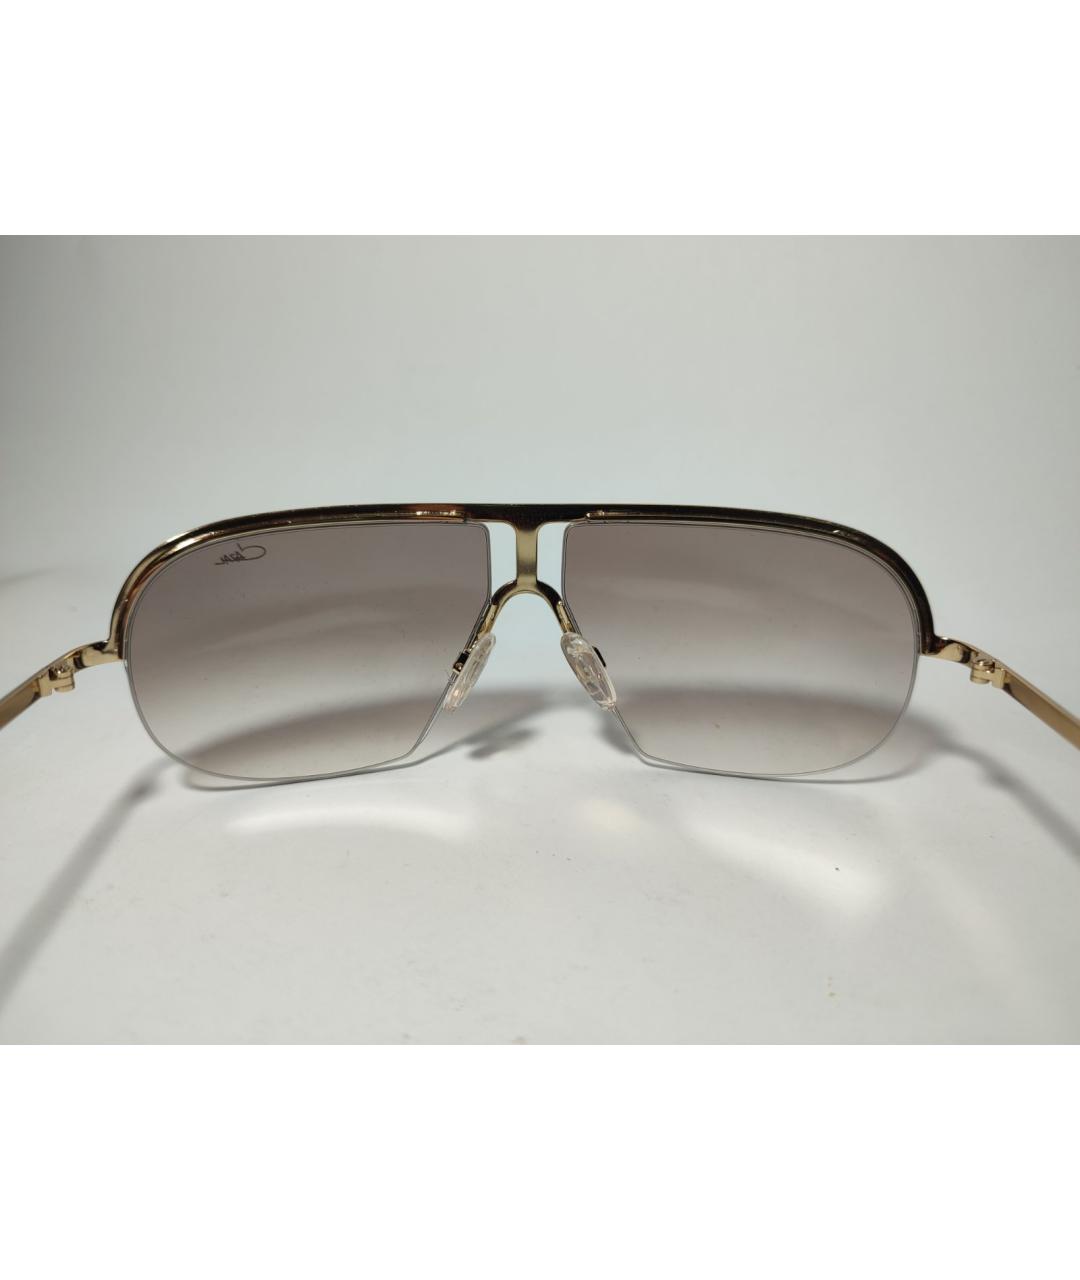 CAZAL Золотые металлические солнцезащитные очки, фото 2